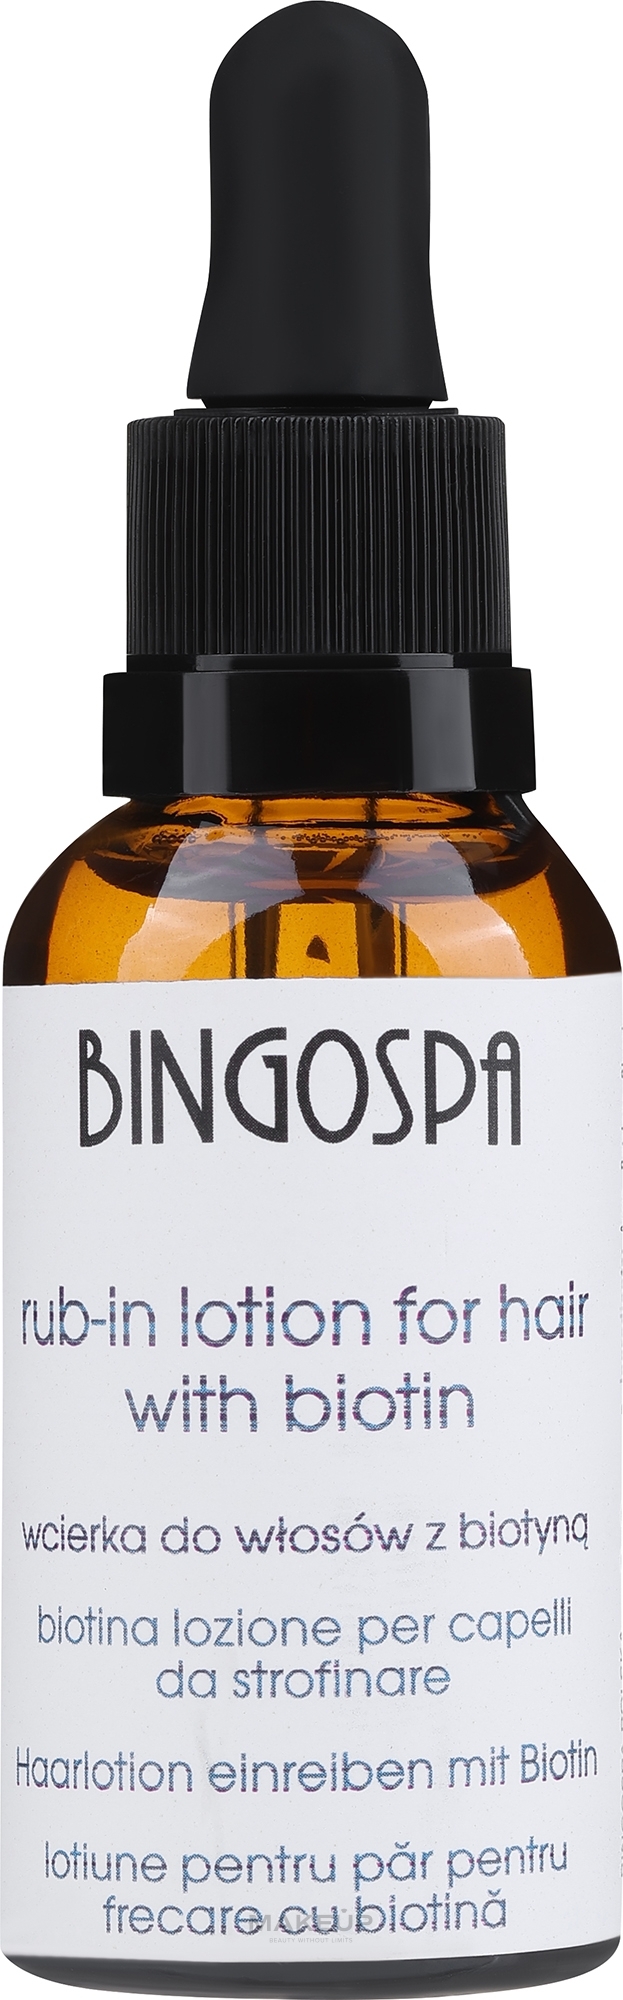 Balsam do włosów z biotyną 20% - BingoSpa Biotin 20% For Hair Rub-In Lotion — Zdjęcie 30 ml